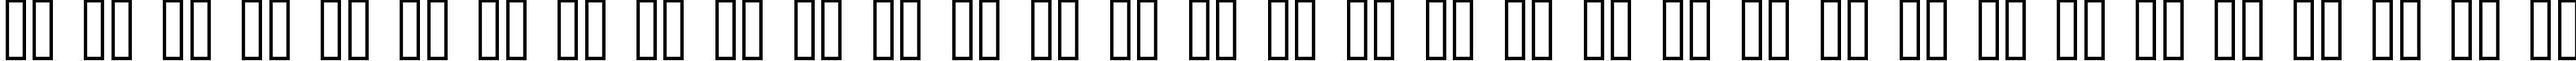 Пример написания русского алфавита шрифтом Font Shui